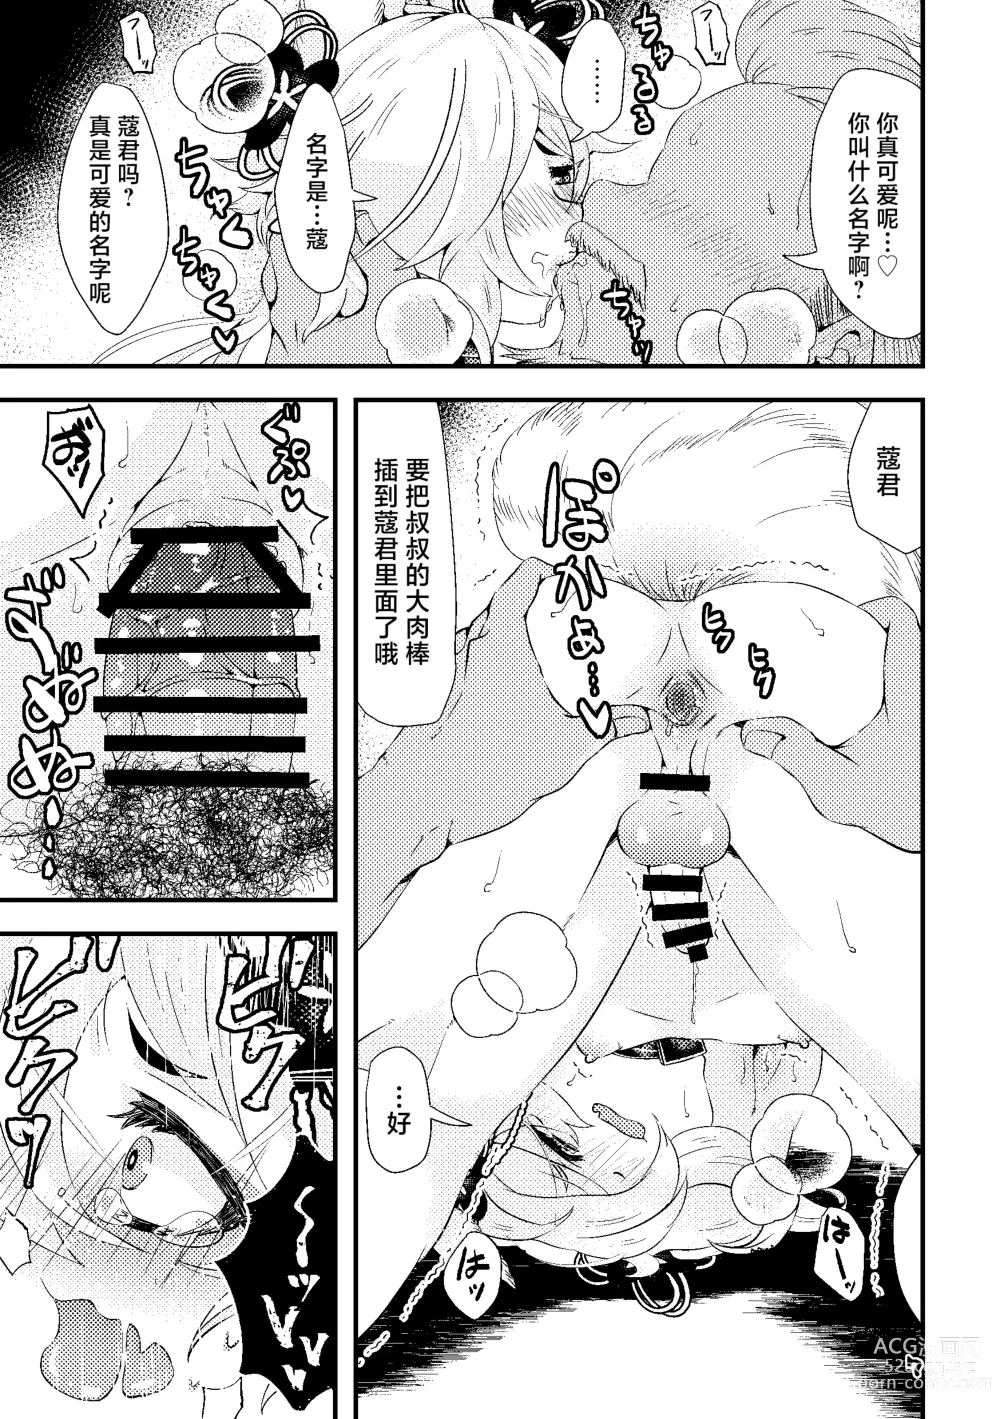 Page 7 of doujinshi Kou-kun to Mitsugetsu